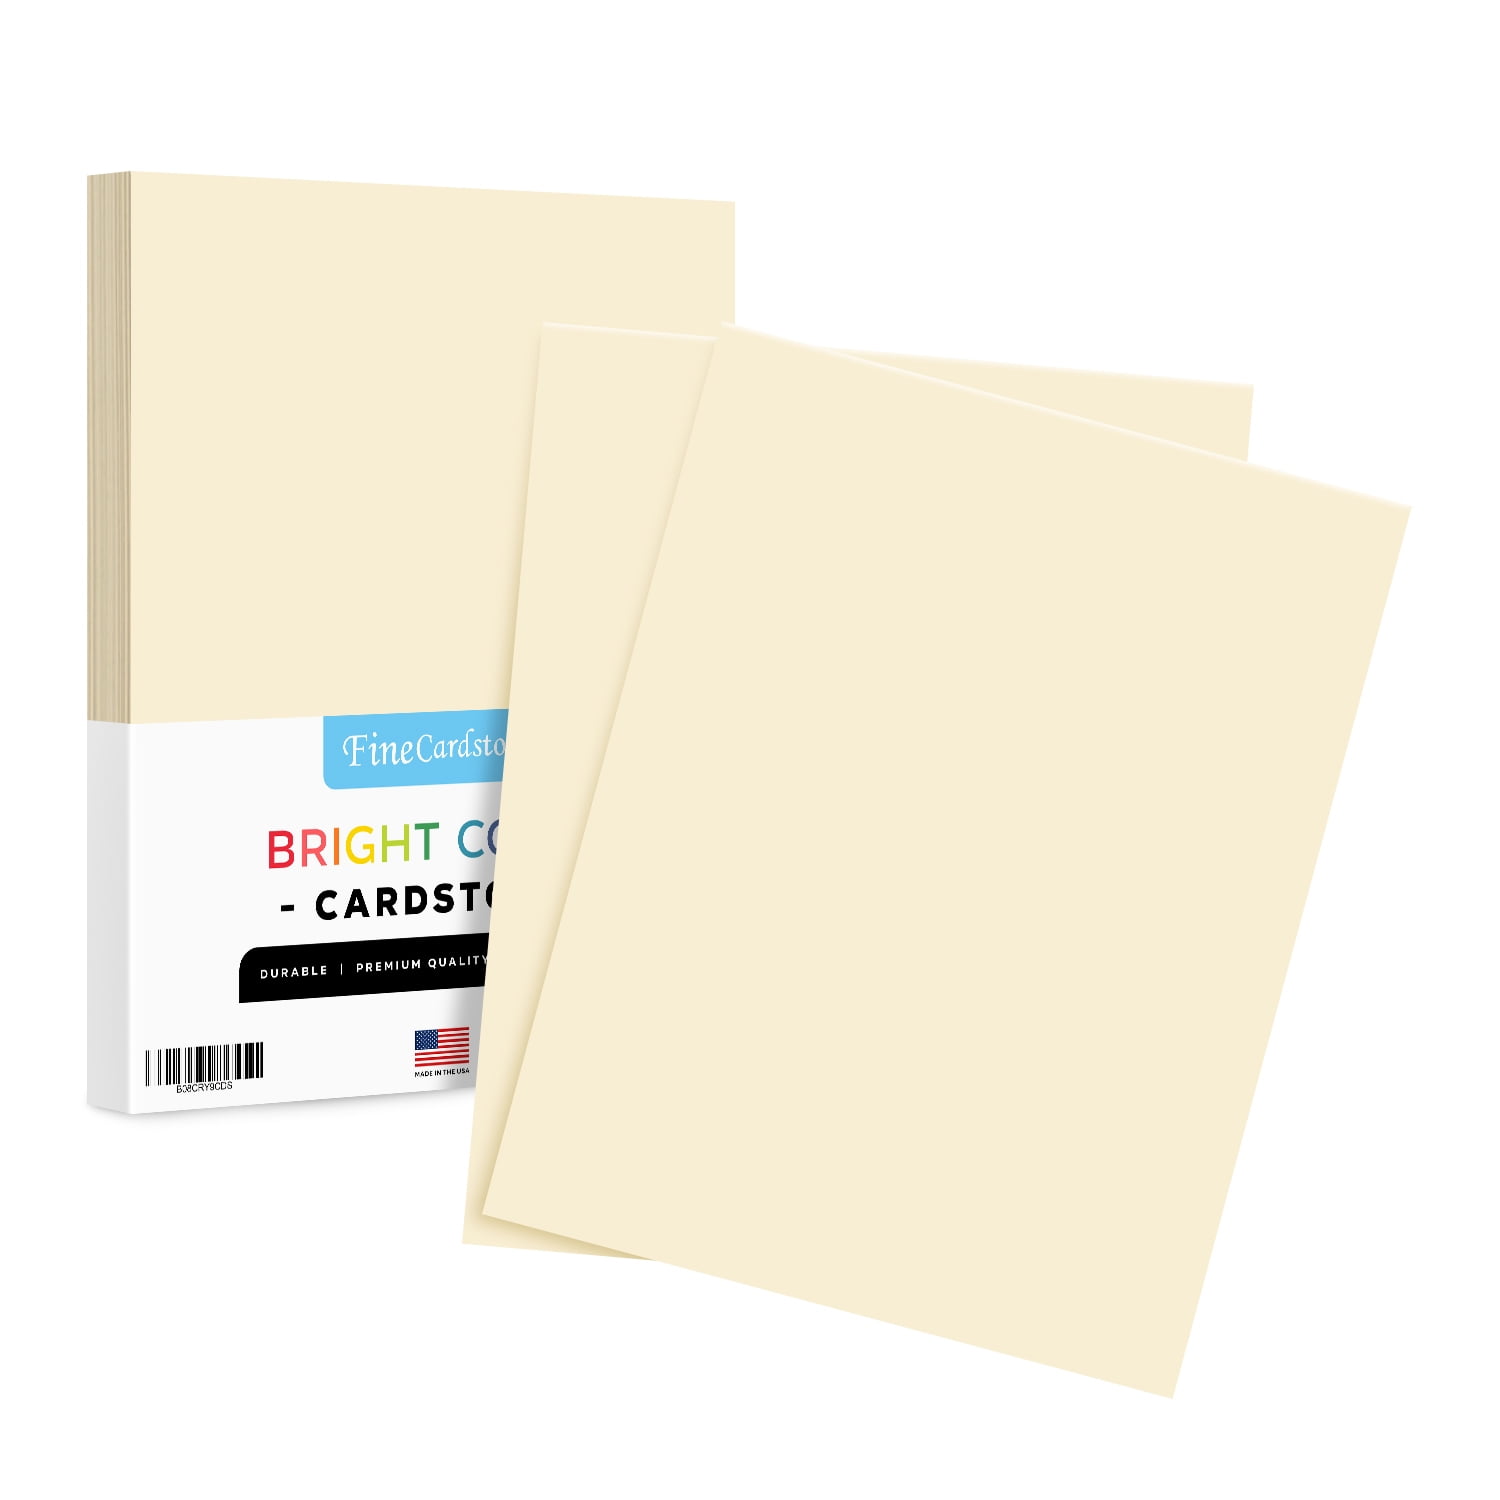 Orange 100 Pages 20lbs UOffice Colored Bond Paper Bundle 8.5 x 11 